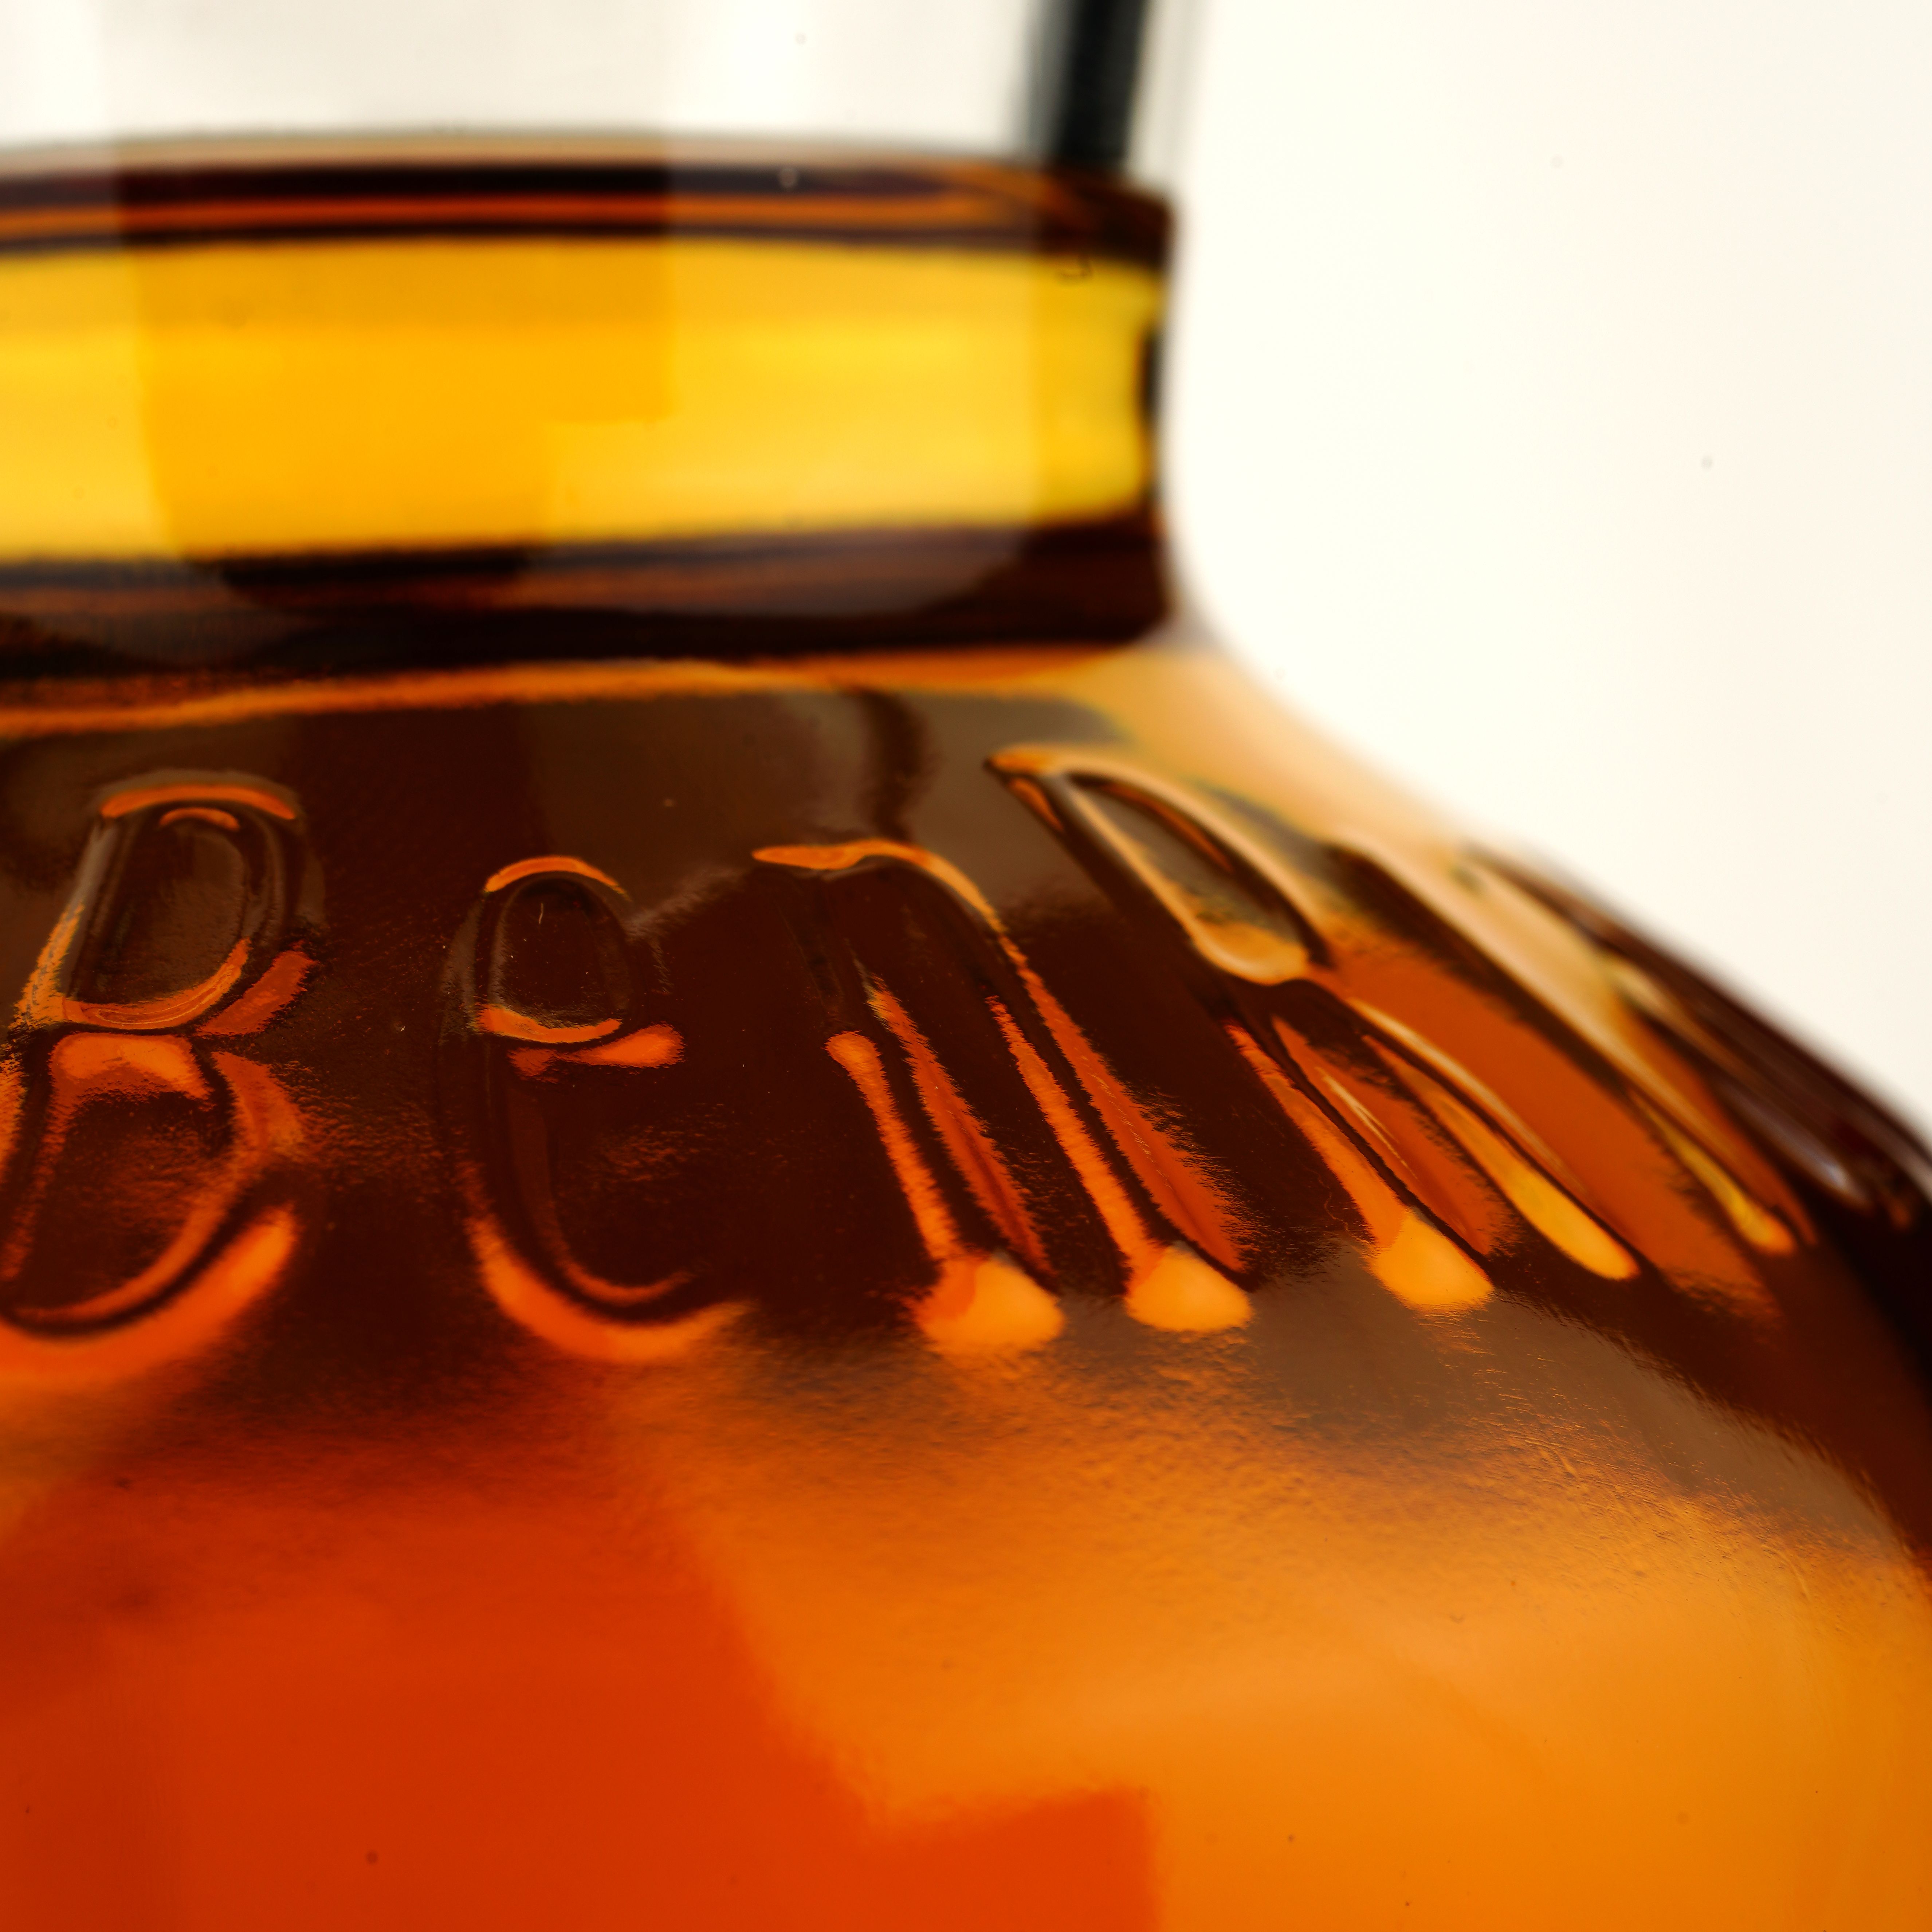 Виски BenRiach 18 Years Old Rum Barrel Cask 1644 Single Malt Scotch Whisky, в подарочной упаковке, 57,6%, 0,7 л - фото 7